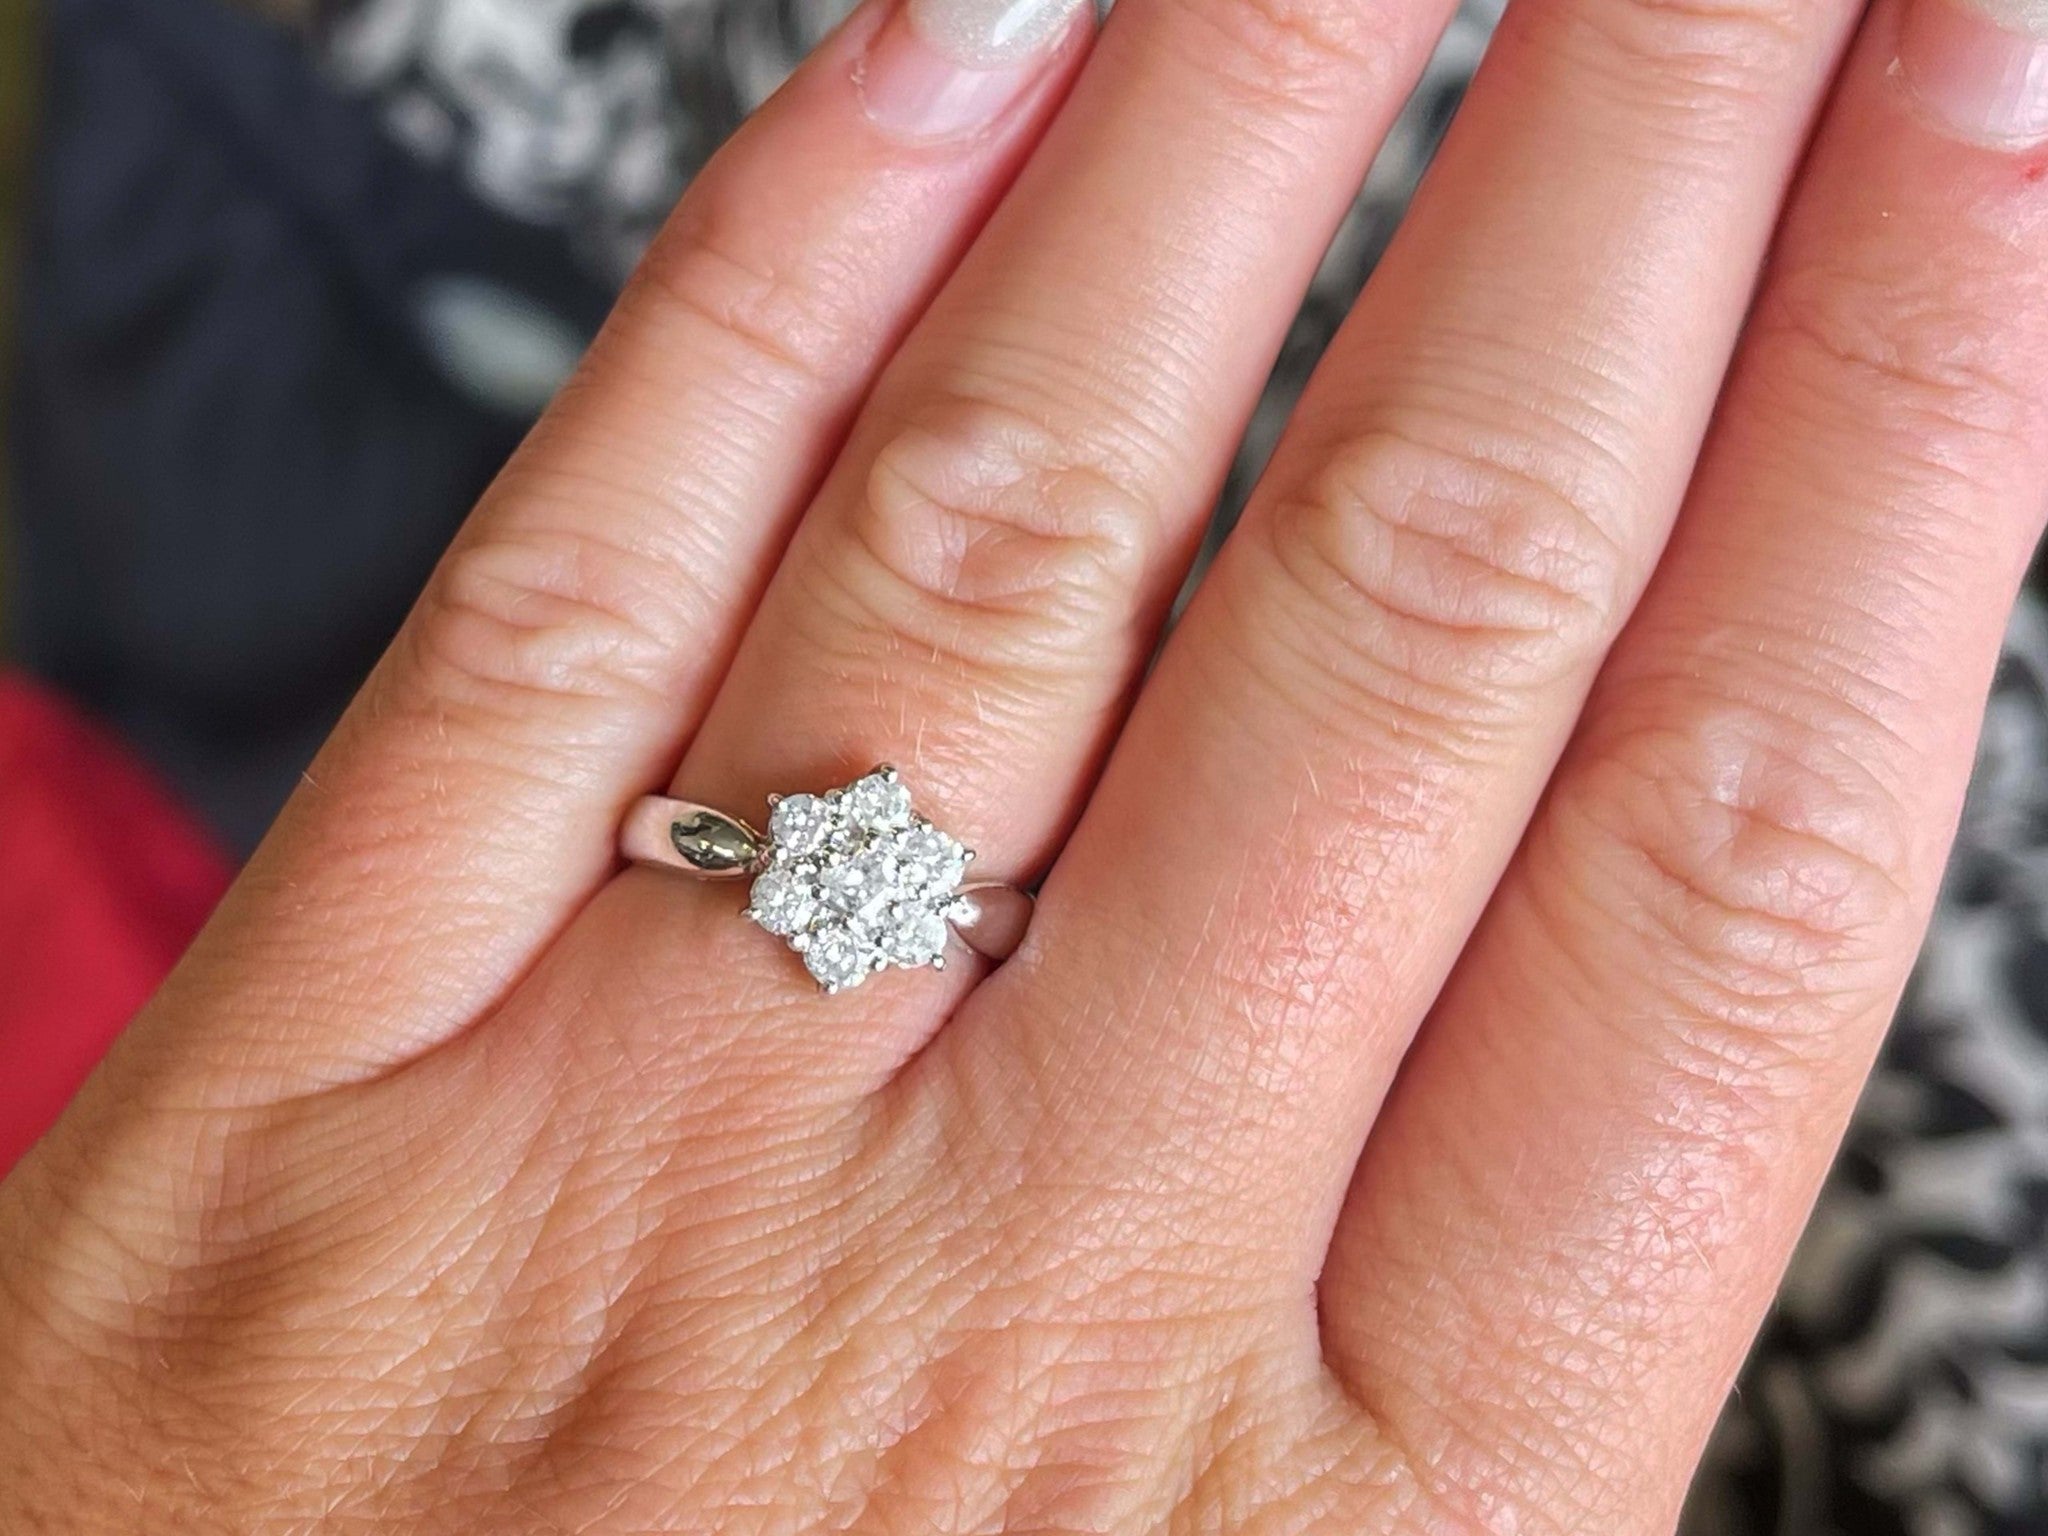 7 Diamond Flower Ring in 18k White Gold